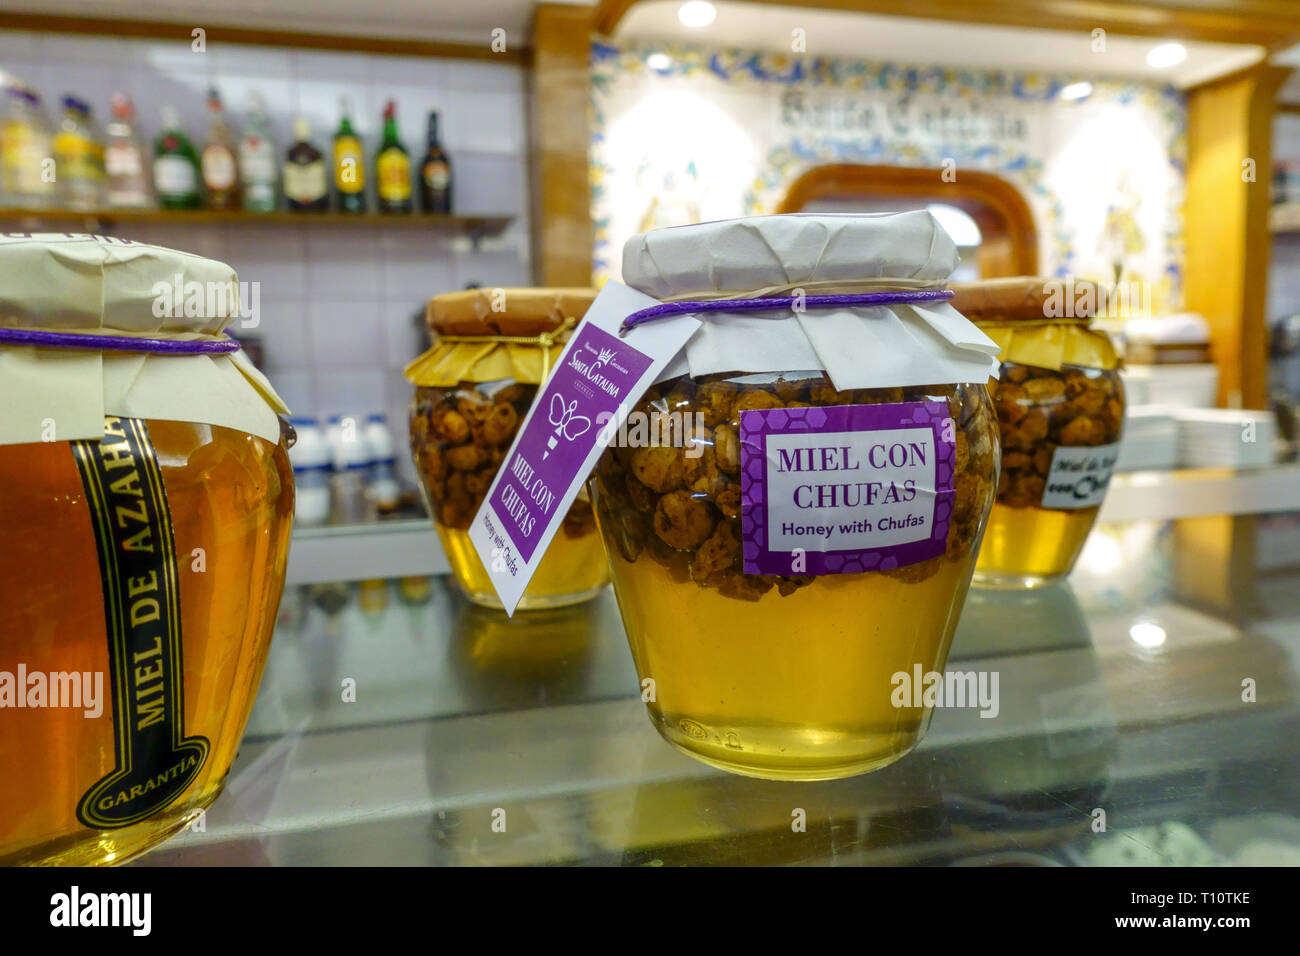 Valence, Miel, miel avec con chufas souchet dans Horchateria de Santa Catalina, Espagne Banque D'Images